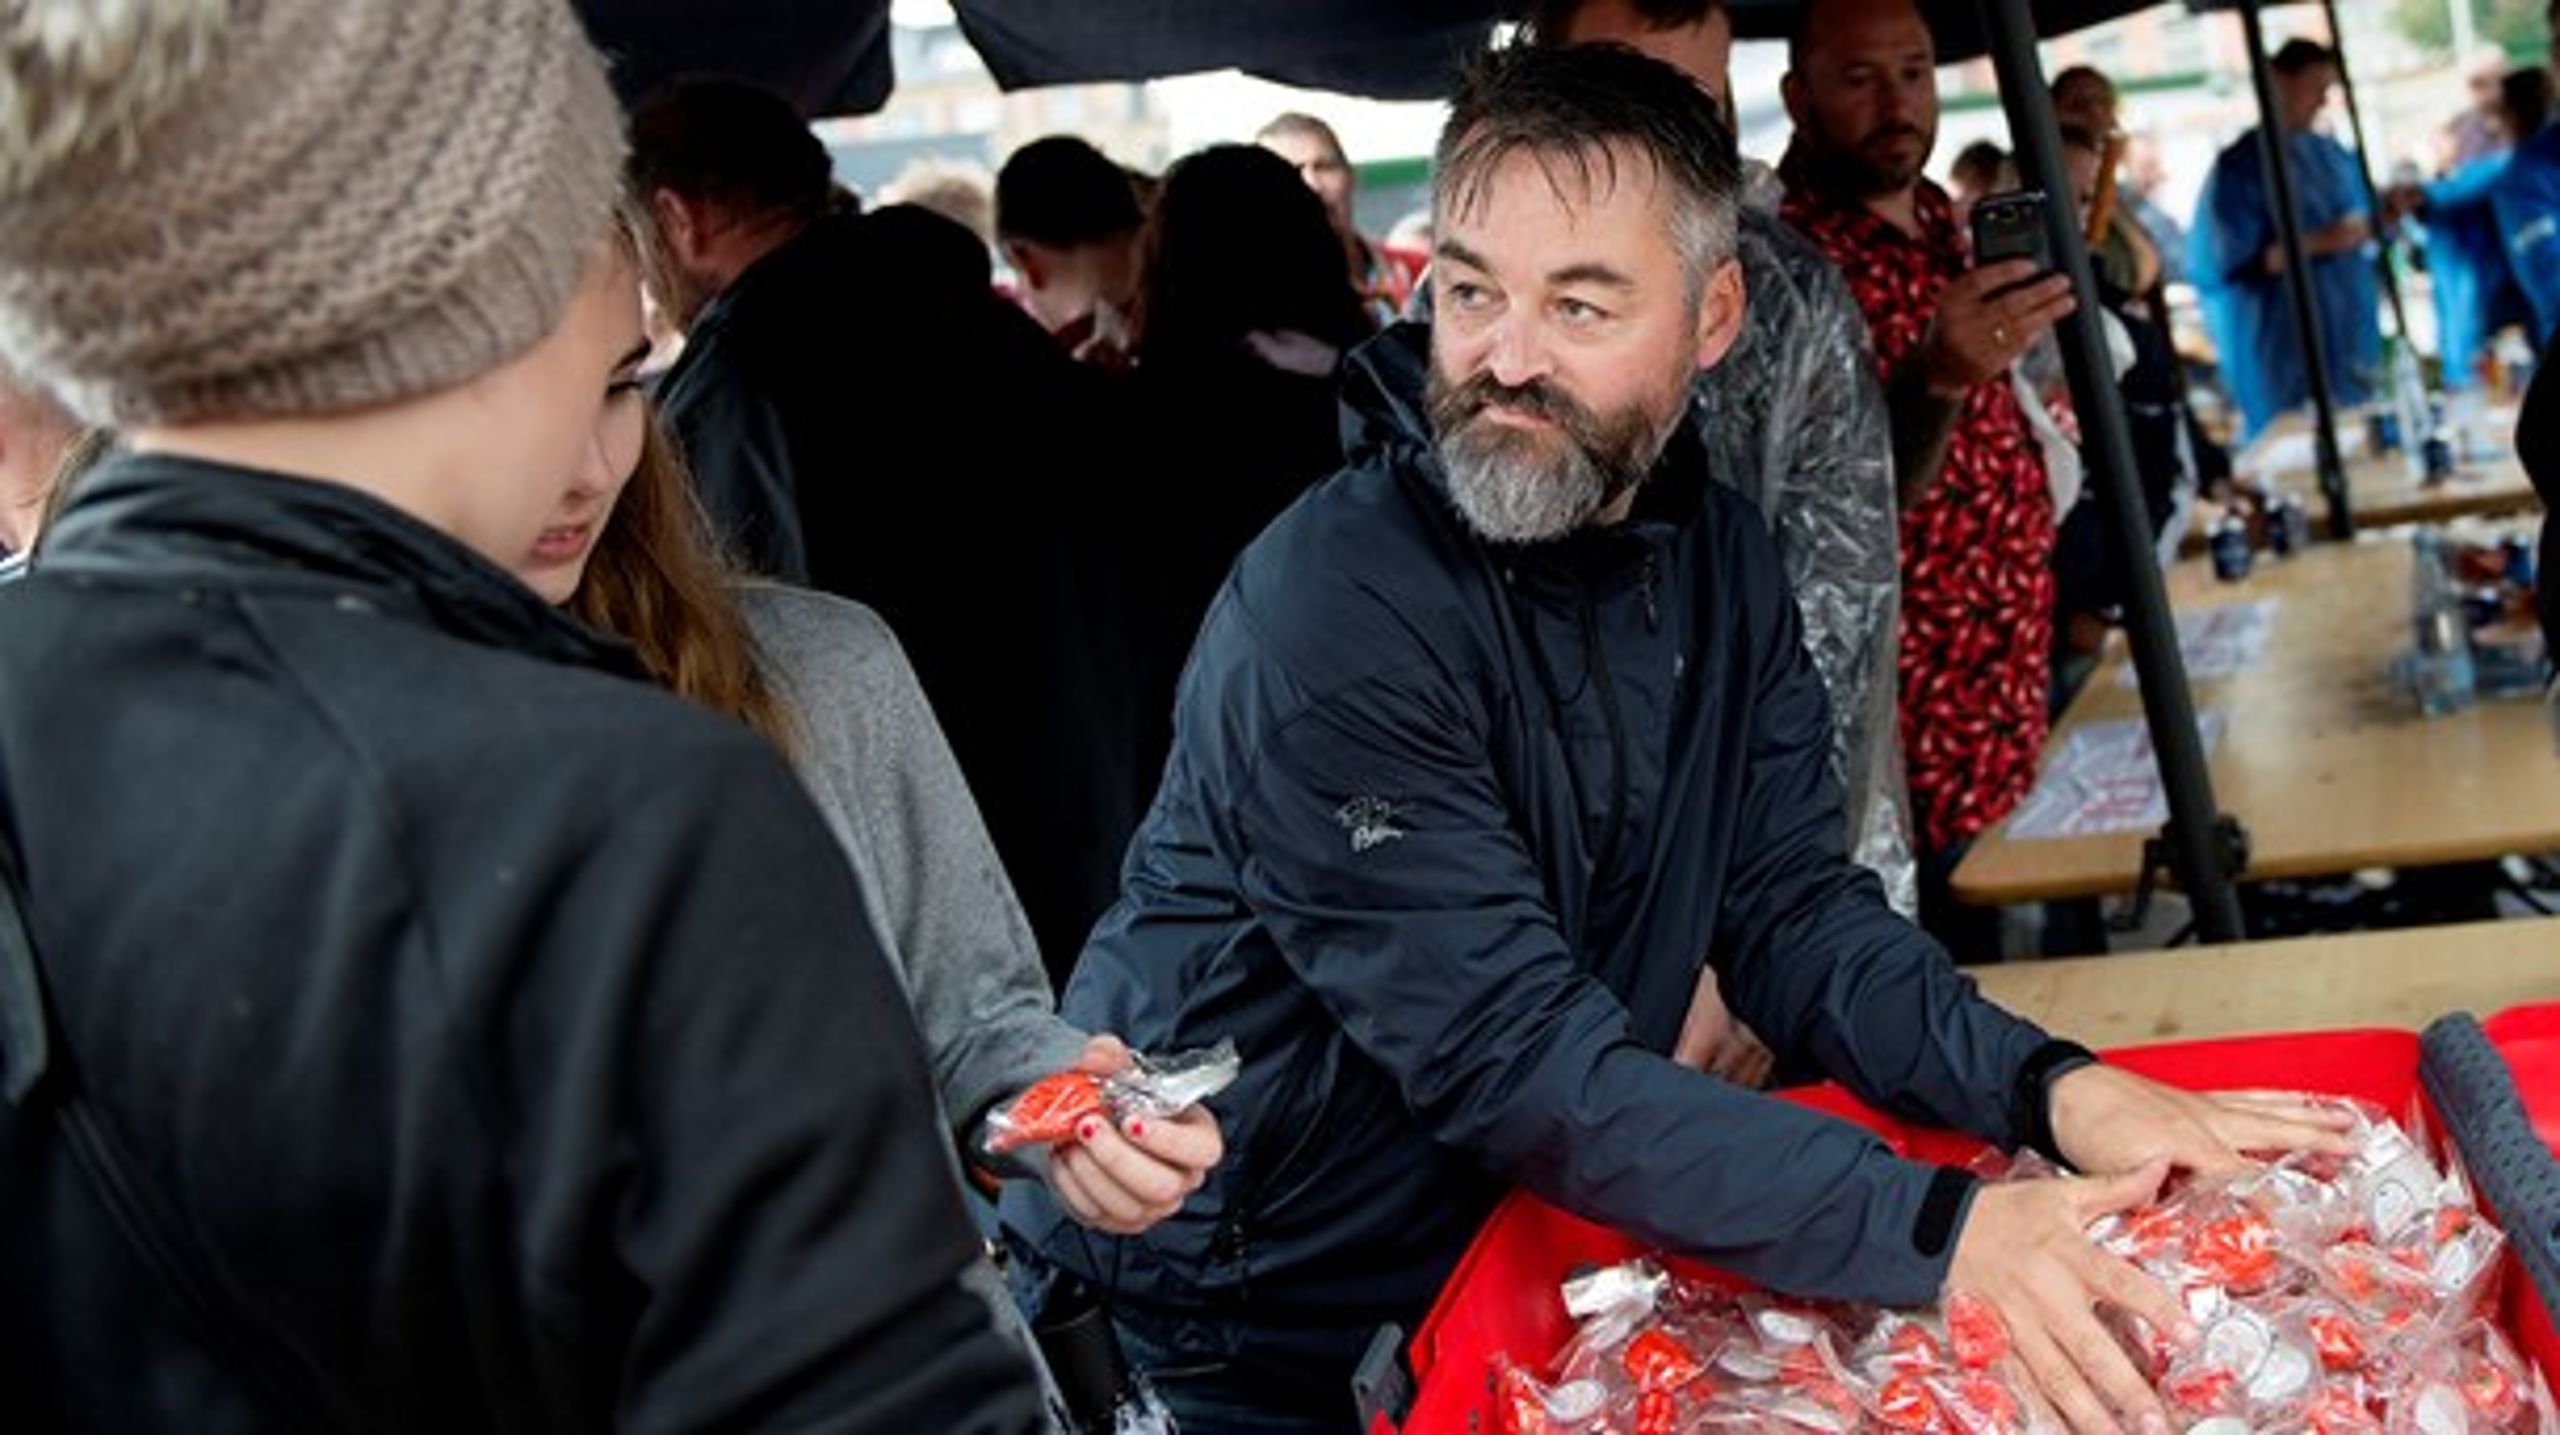 Chili Klaus laver happening på Rådhuspladsen i København, hvor 1000 mennesker spiser en chili samtidig.(Foto: Liselotte Sabroe/Scanpix 2014).